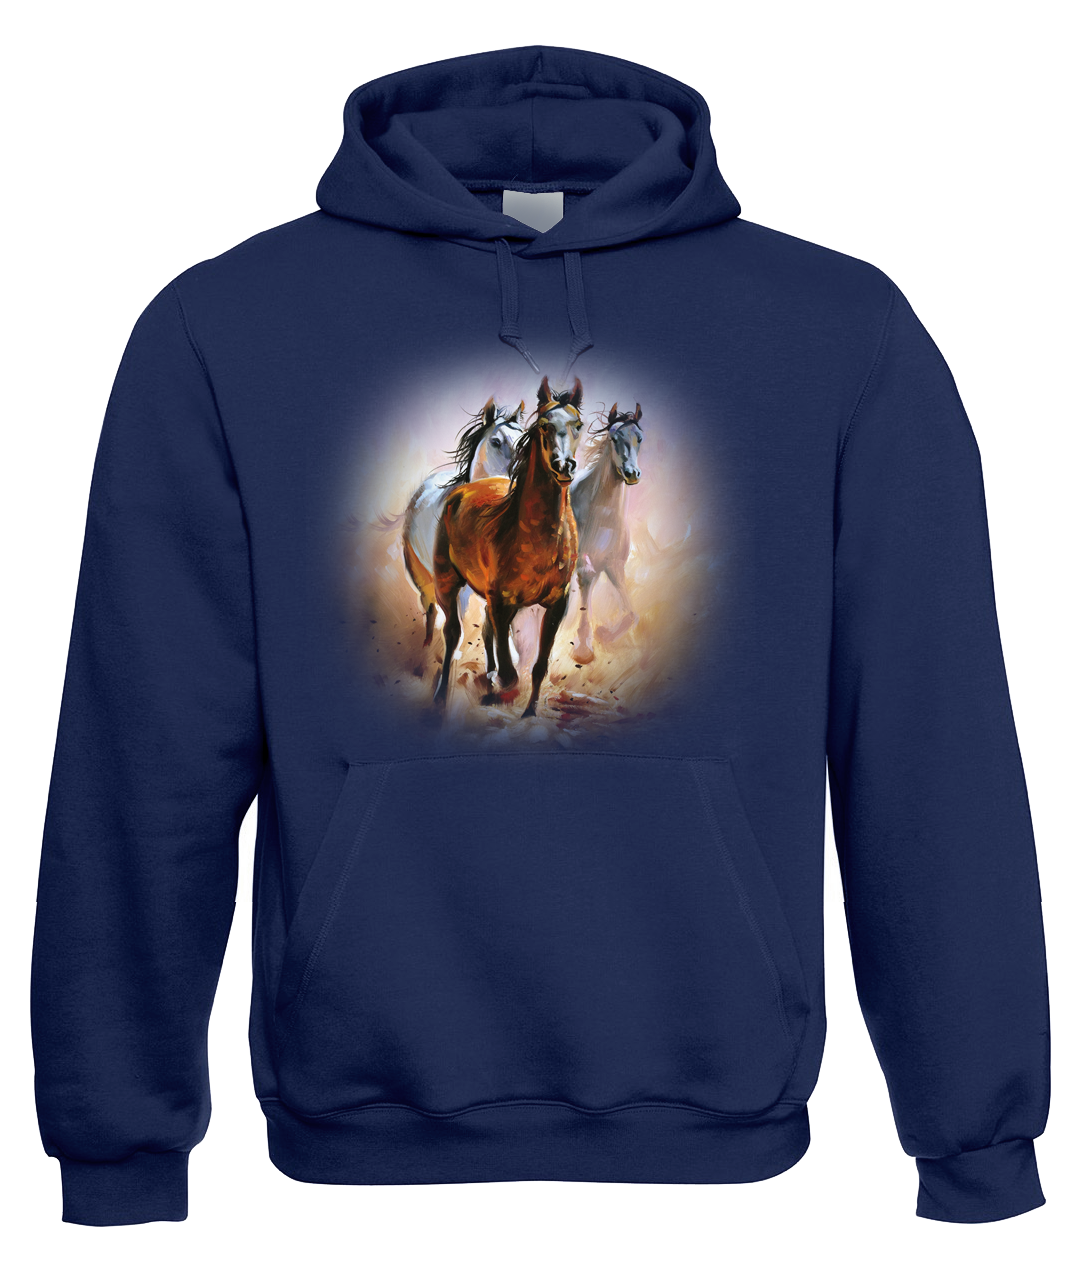 Mikina s koněm - Malované koně Velikost: L, Barva: Tmavě modrá